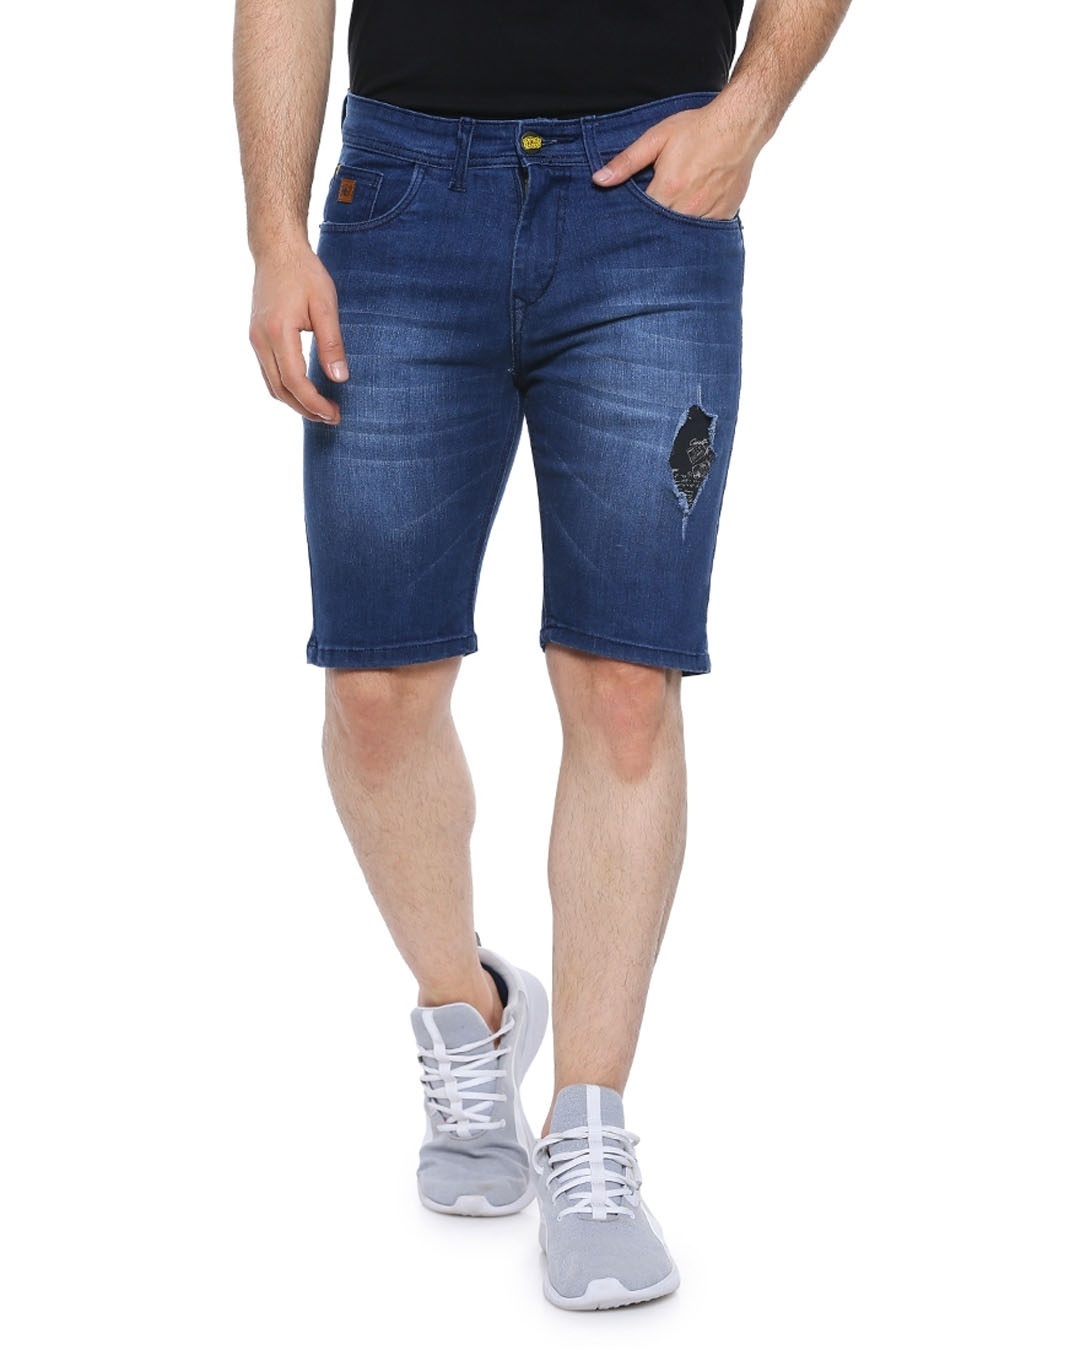 New Style Ripped Slim-Fit Men's Shorts, Men's Denim Shorts | eBay